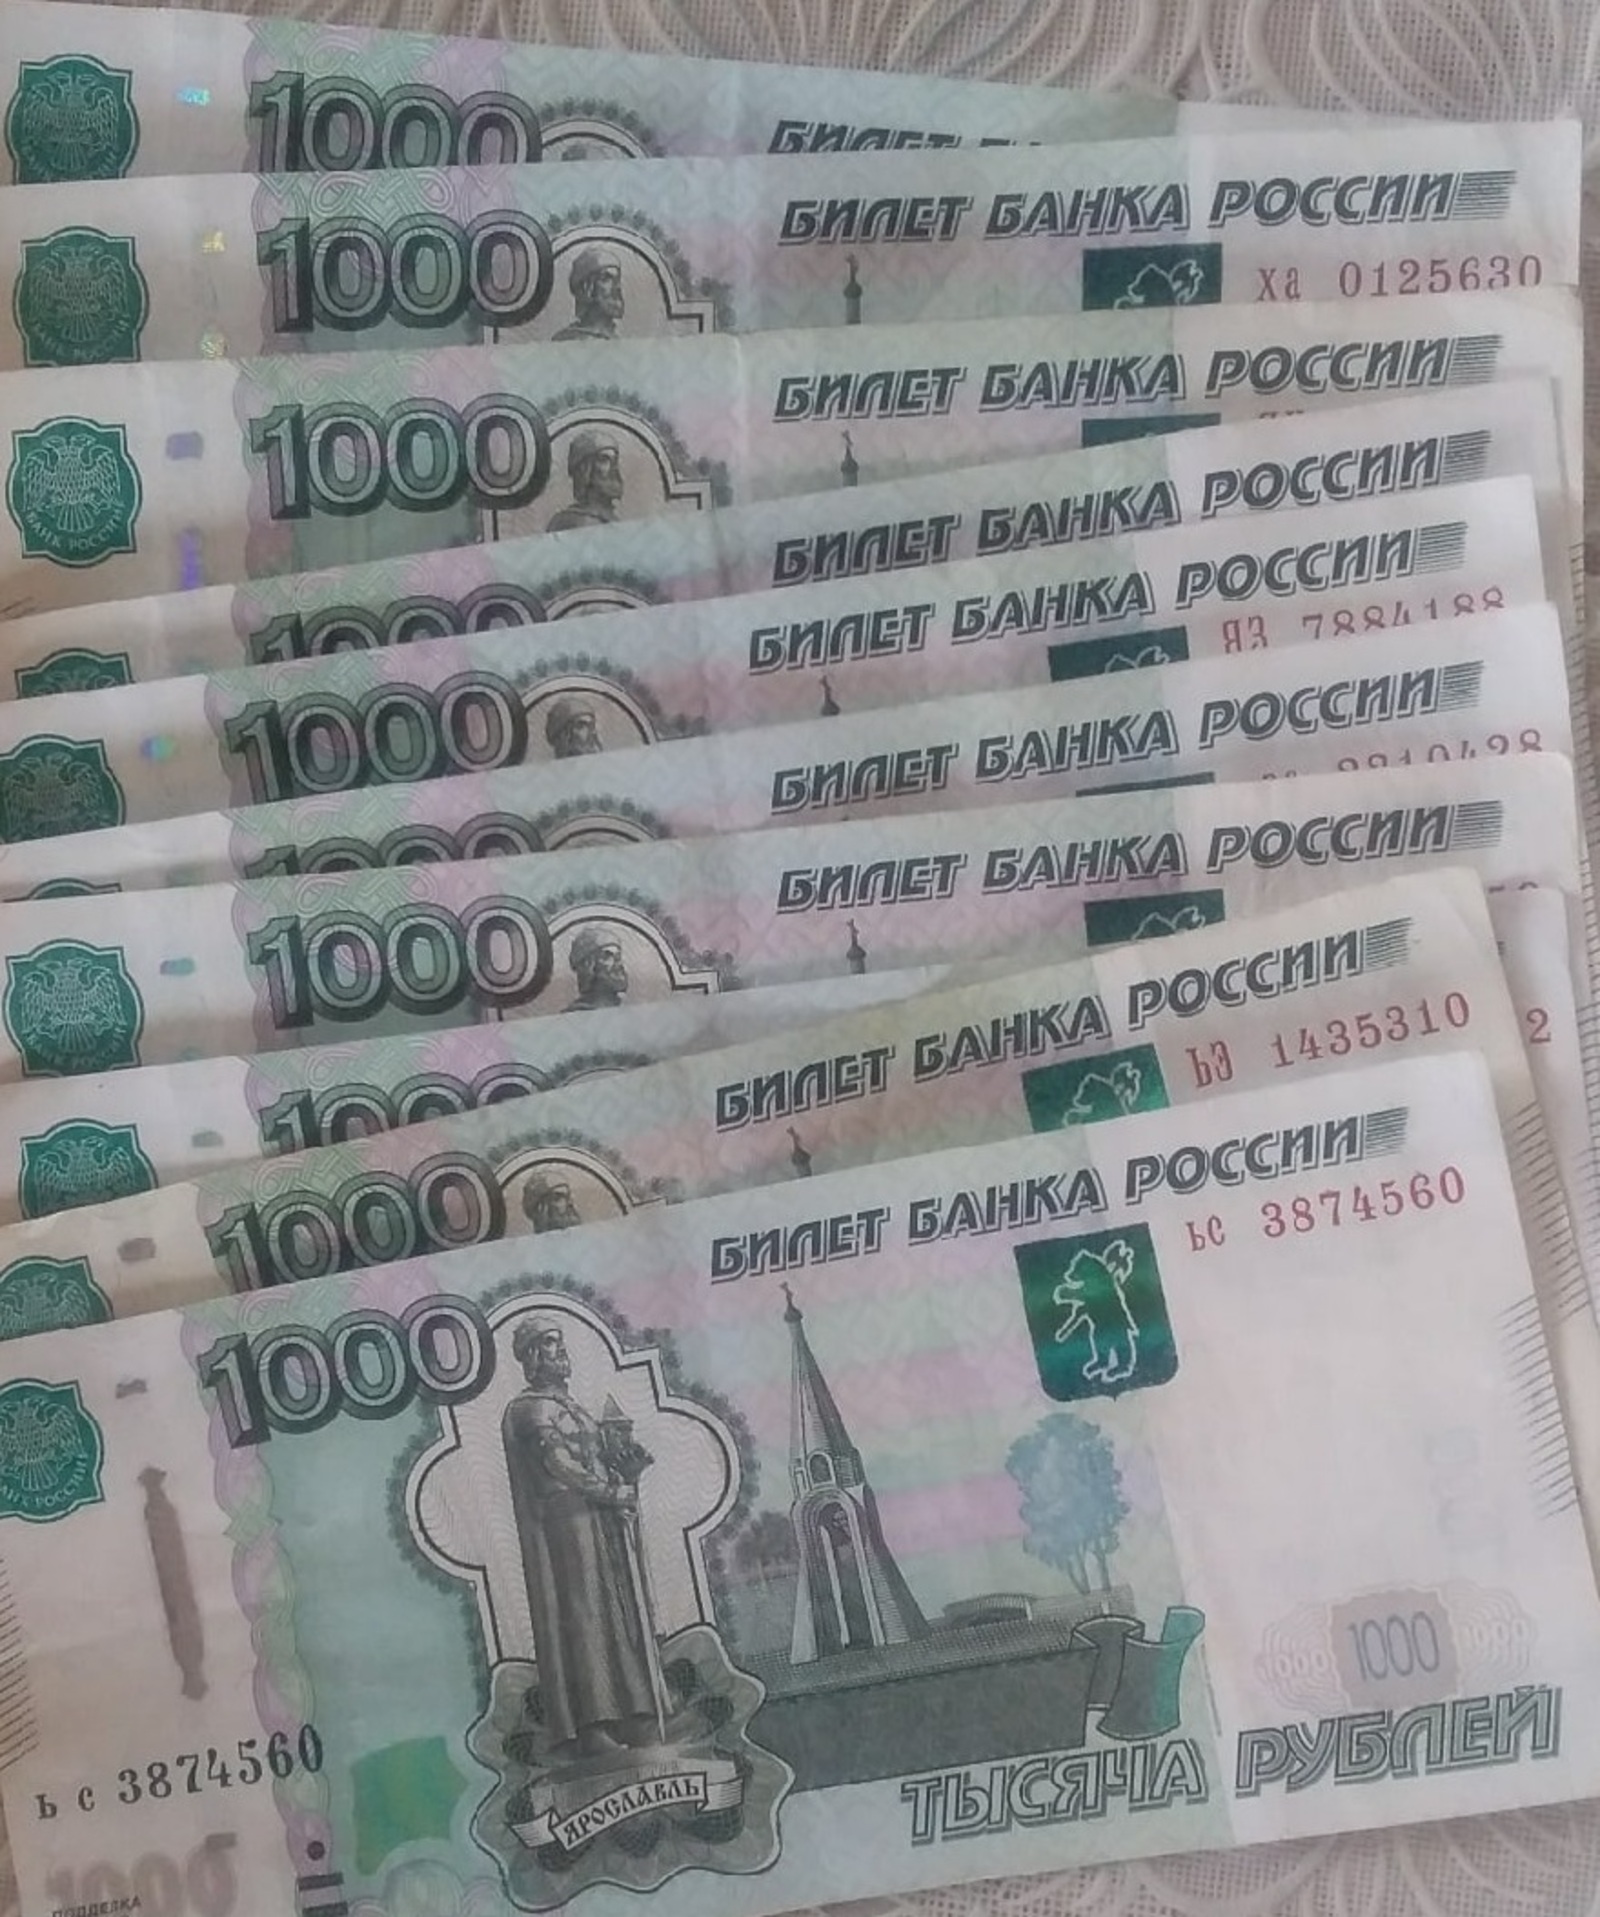 Хорошая новость! С 1 апреля 100 тысяч пенсионеров Башкирии ждет повышение пенсии